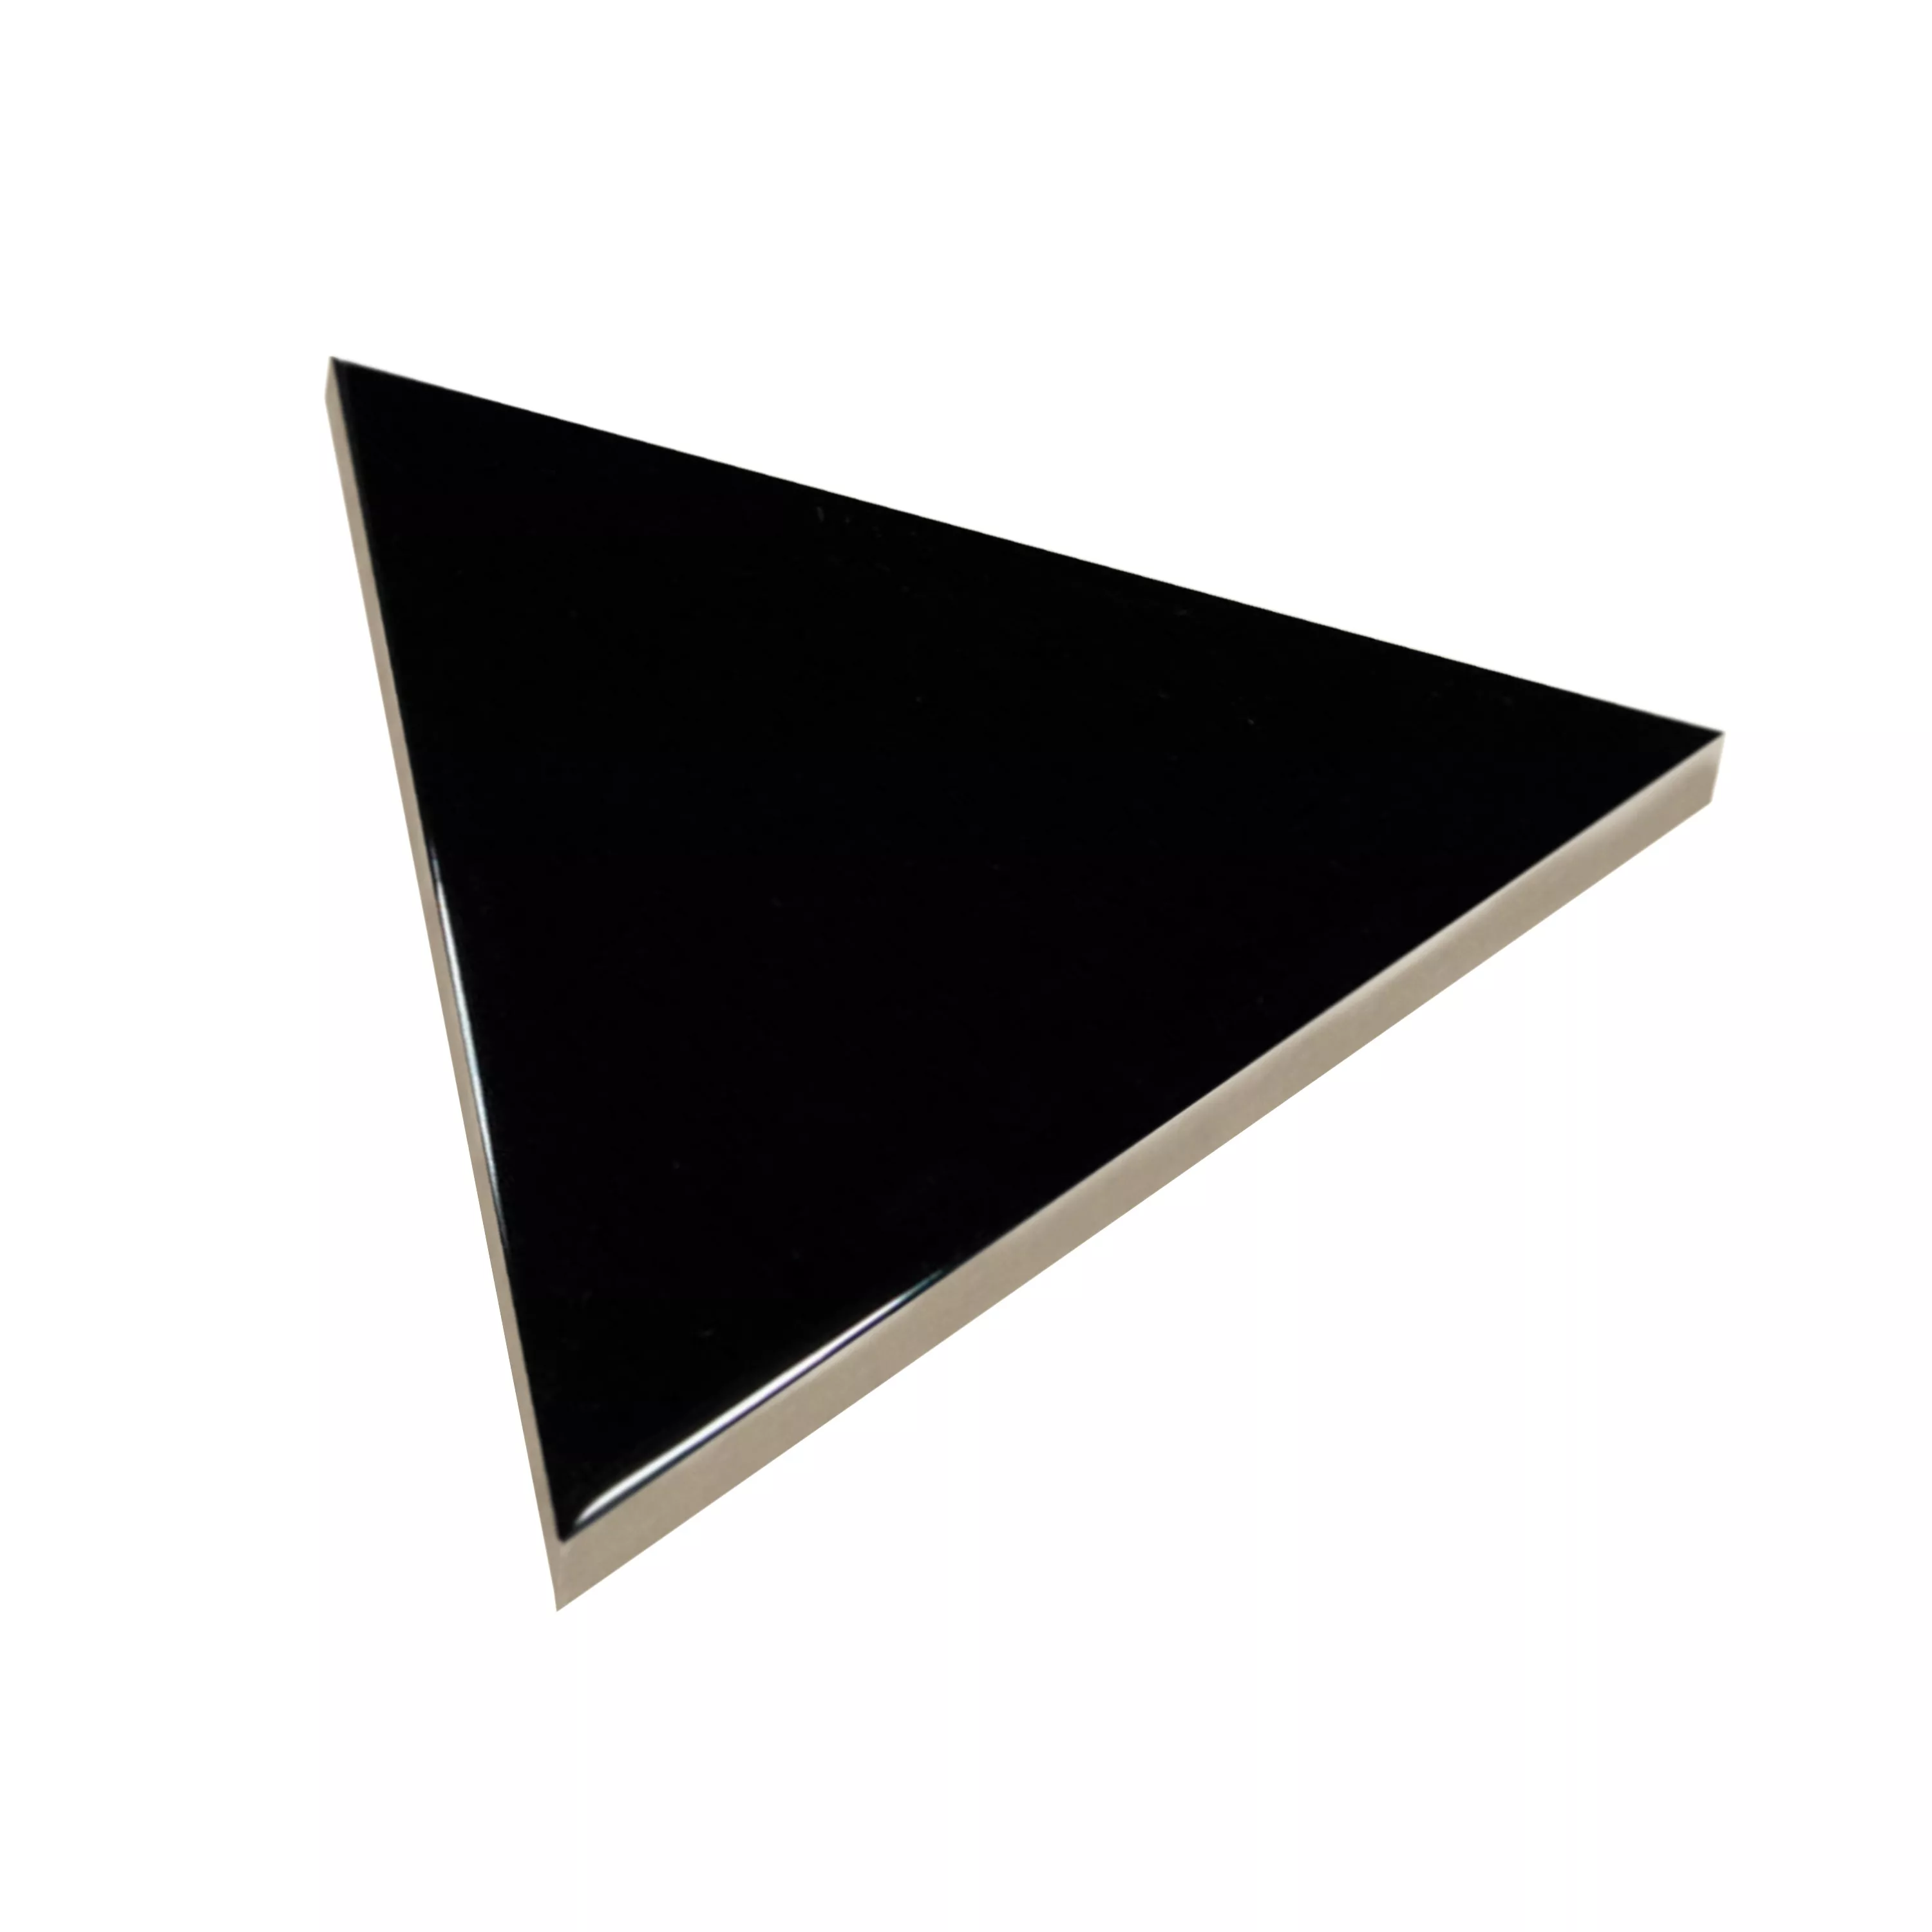 Sample Wall Tiles Britannia Triangle 10,8x12,4cm Black